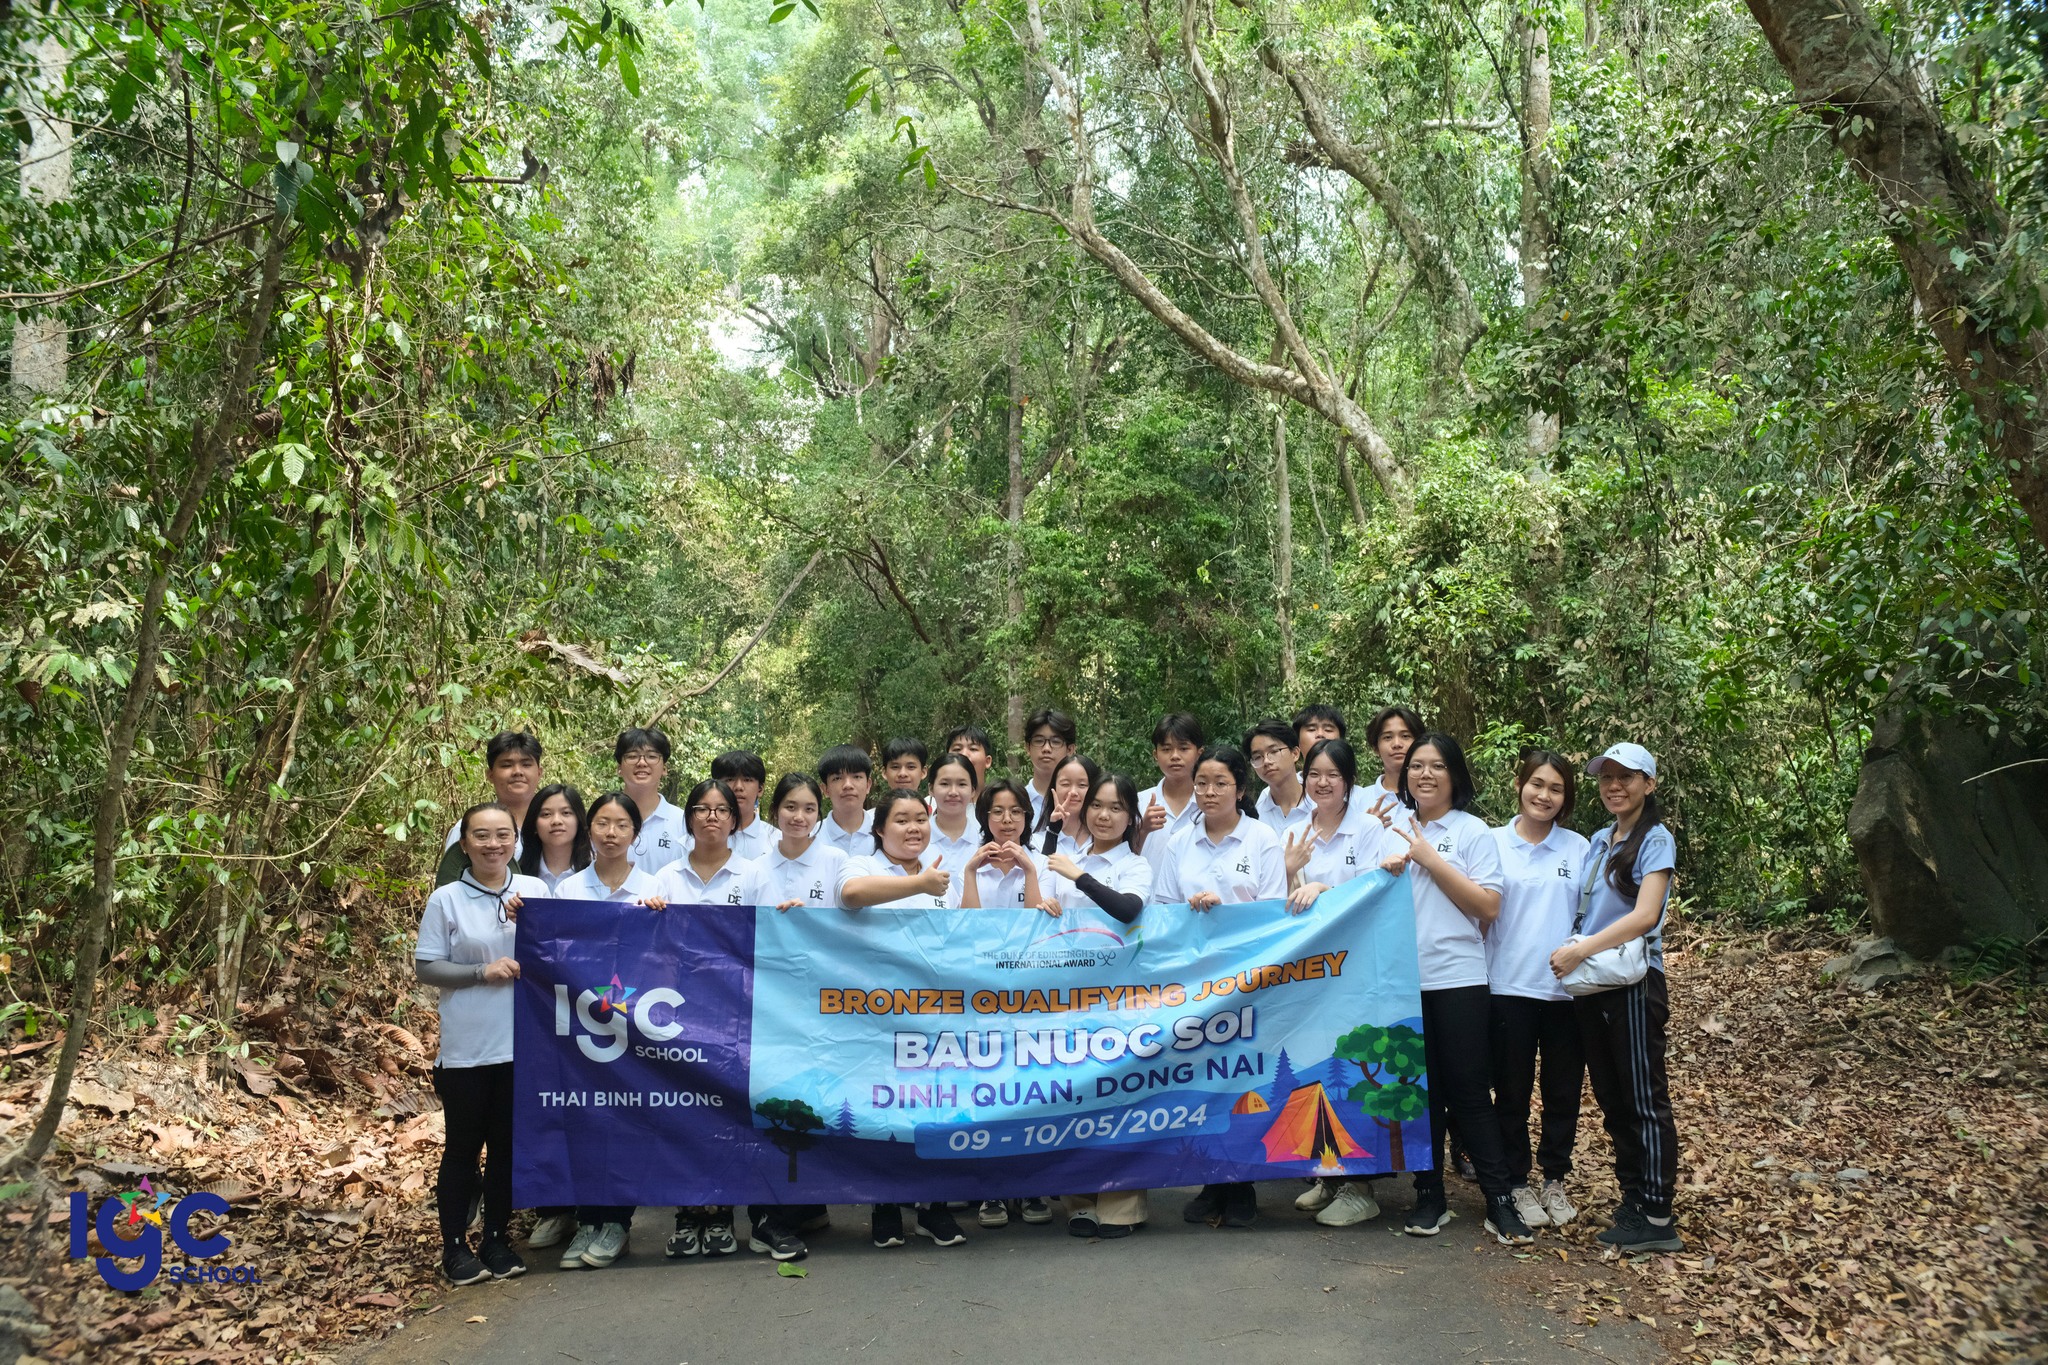 [DofE] Hành trình khám phá thiên nhiên tại Bàu Nước sôi – Rừng Tân Phú